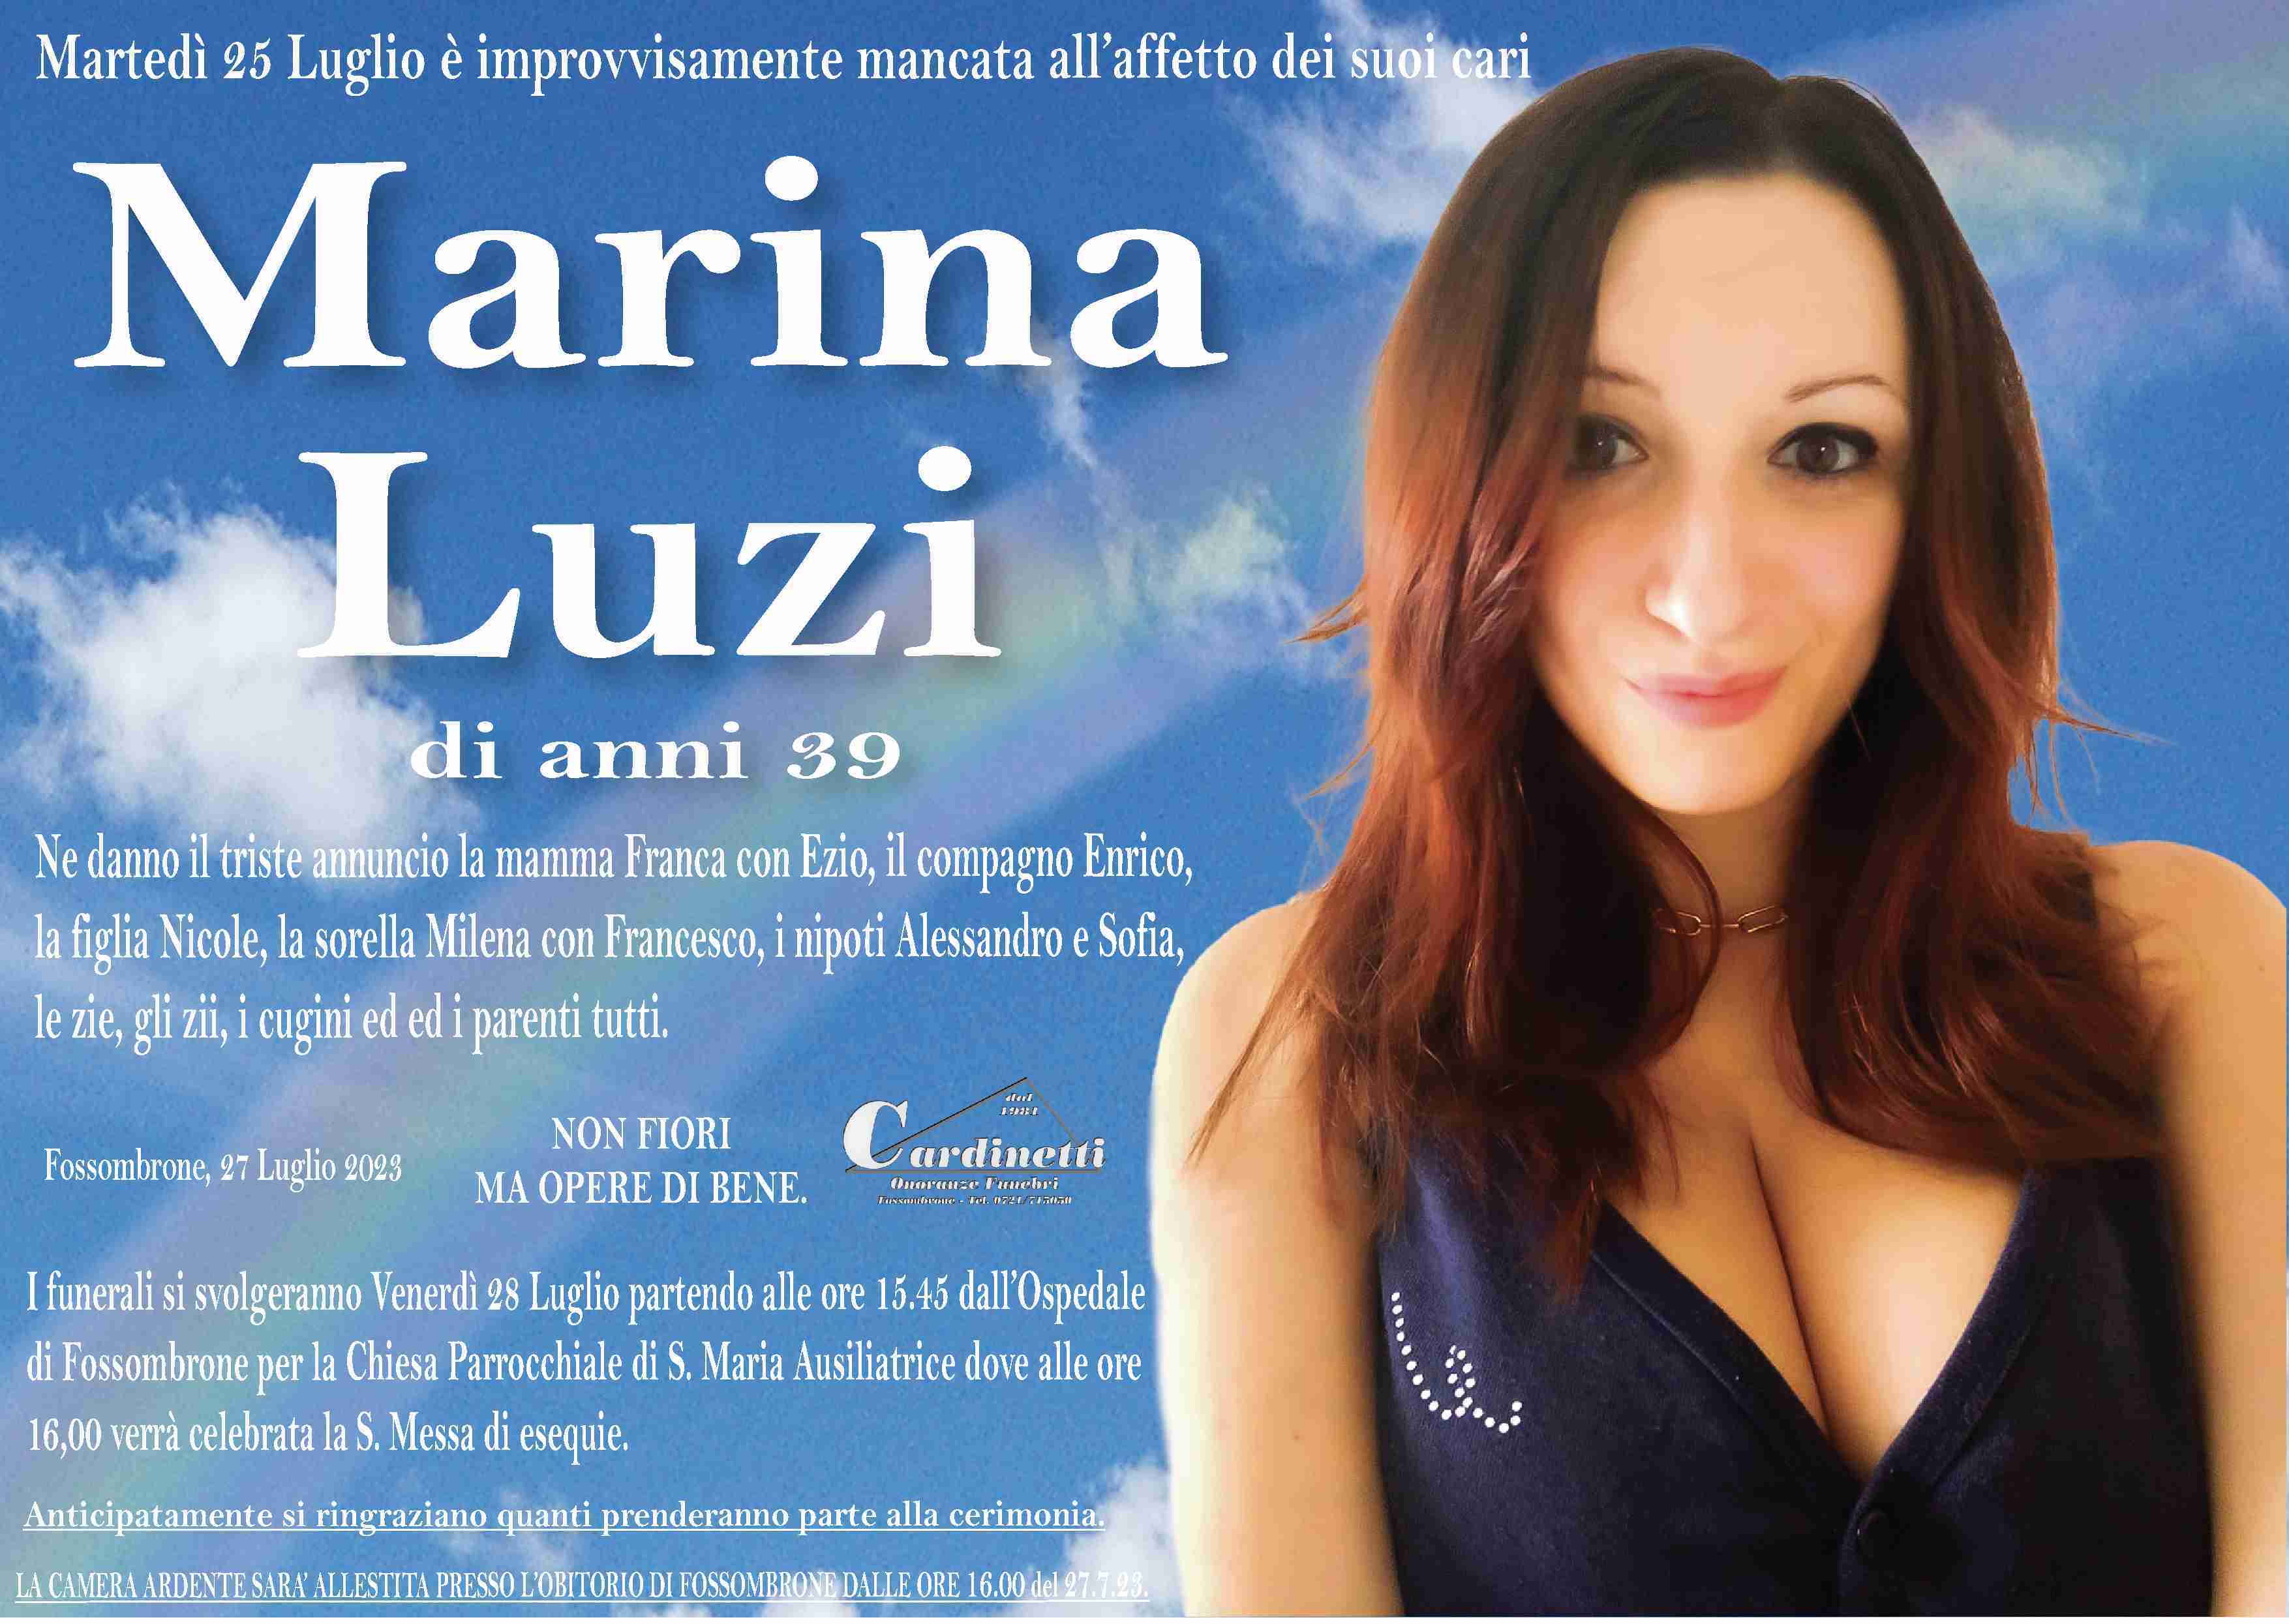 Marina Luzi